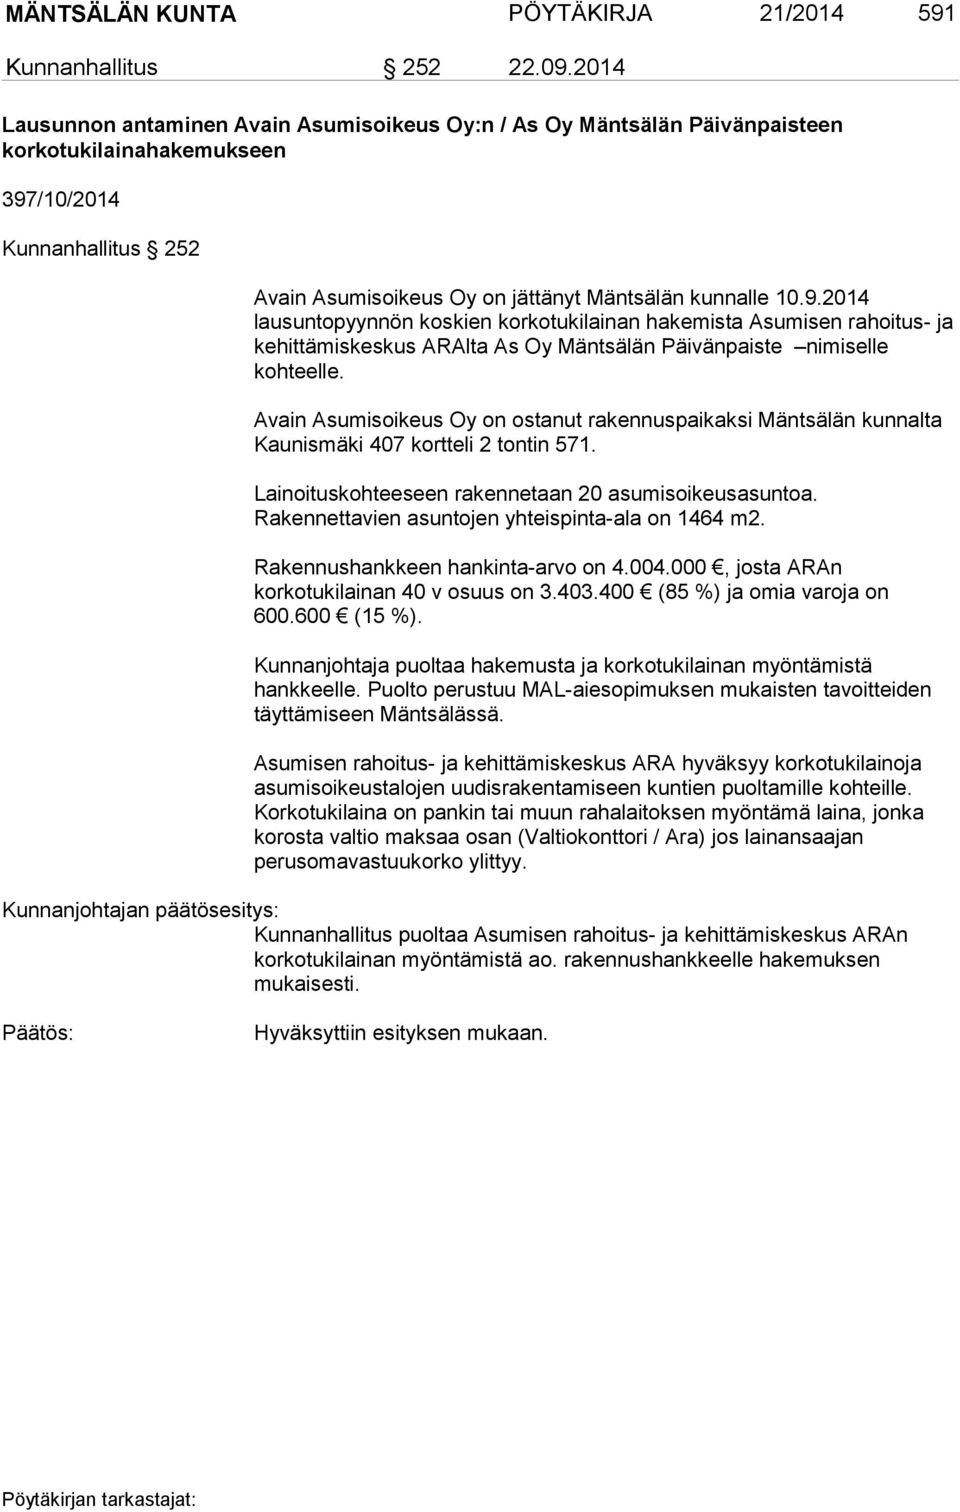 /10/2014 Kunnanhallitus 252 Avain Asumisoikeus Oy on jättänyt Mäntsälän kunnalle 10.9.